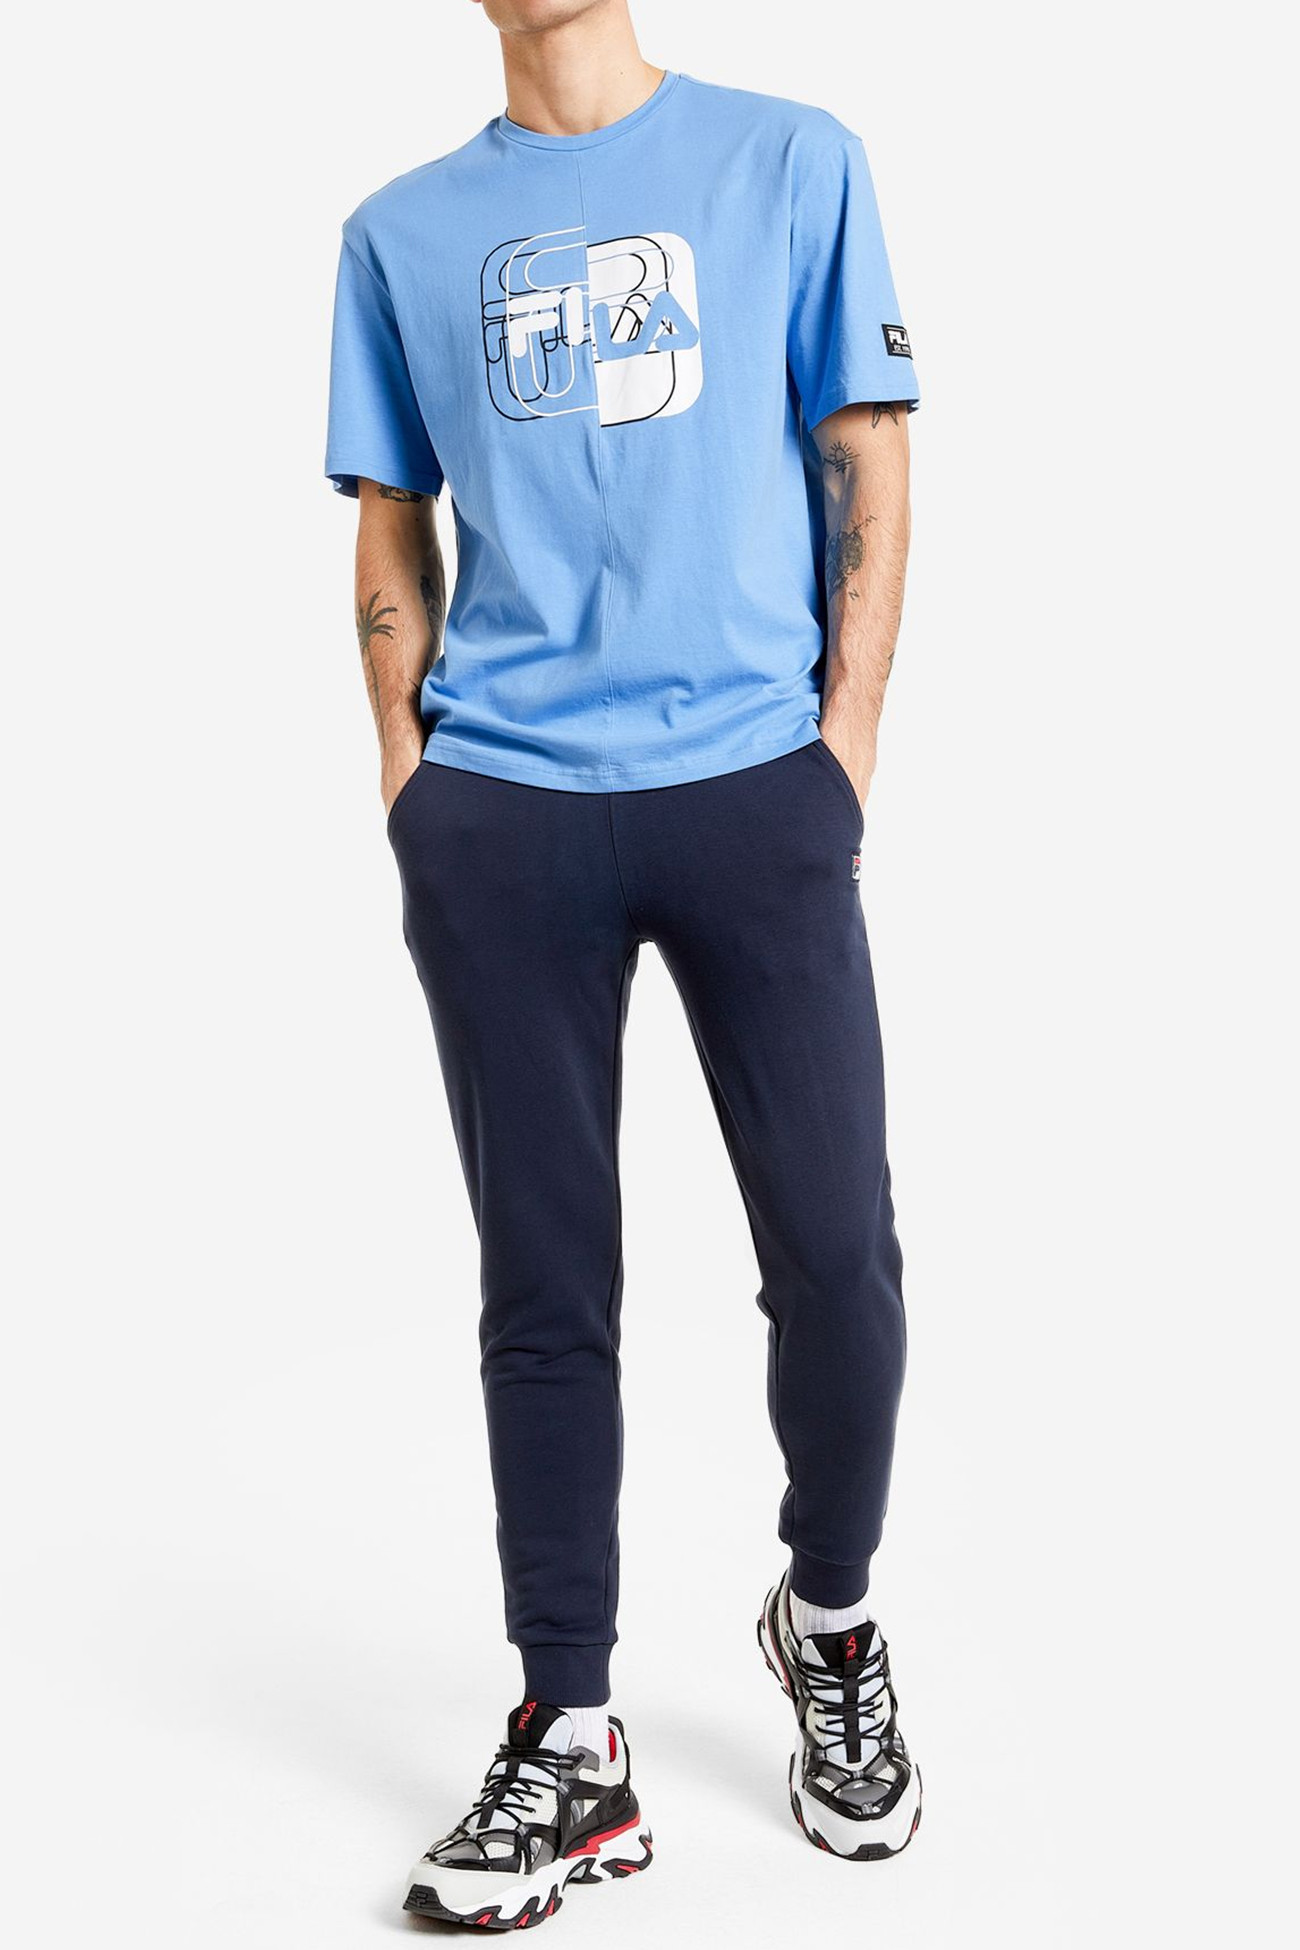 Футболка мужская FILA T-shirt голубая 113358-S1 изображение 6